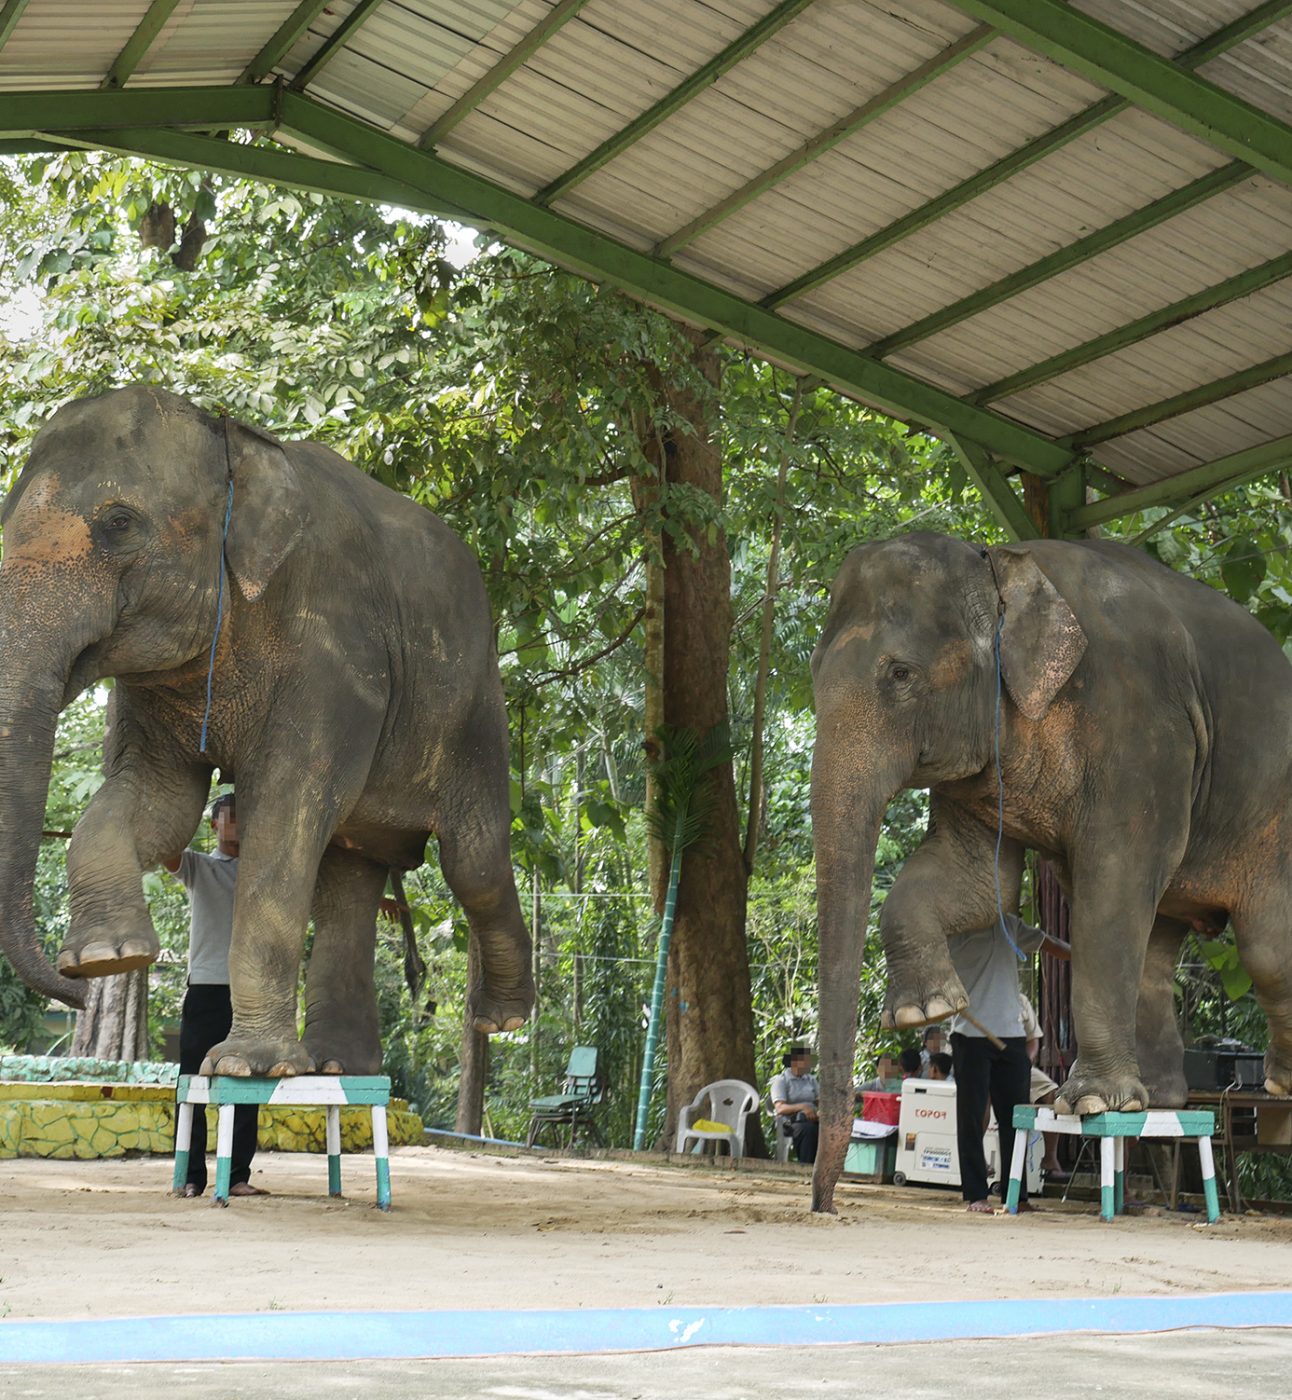 Two elephants balance on footstalls